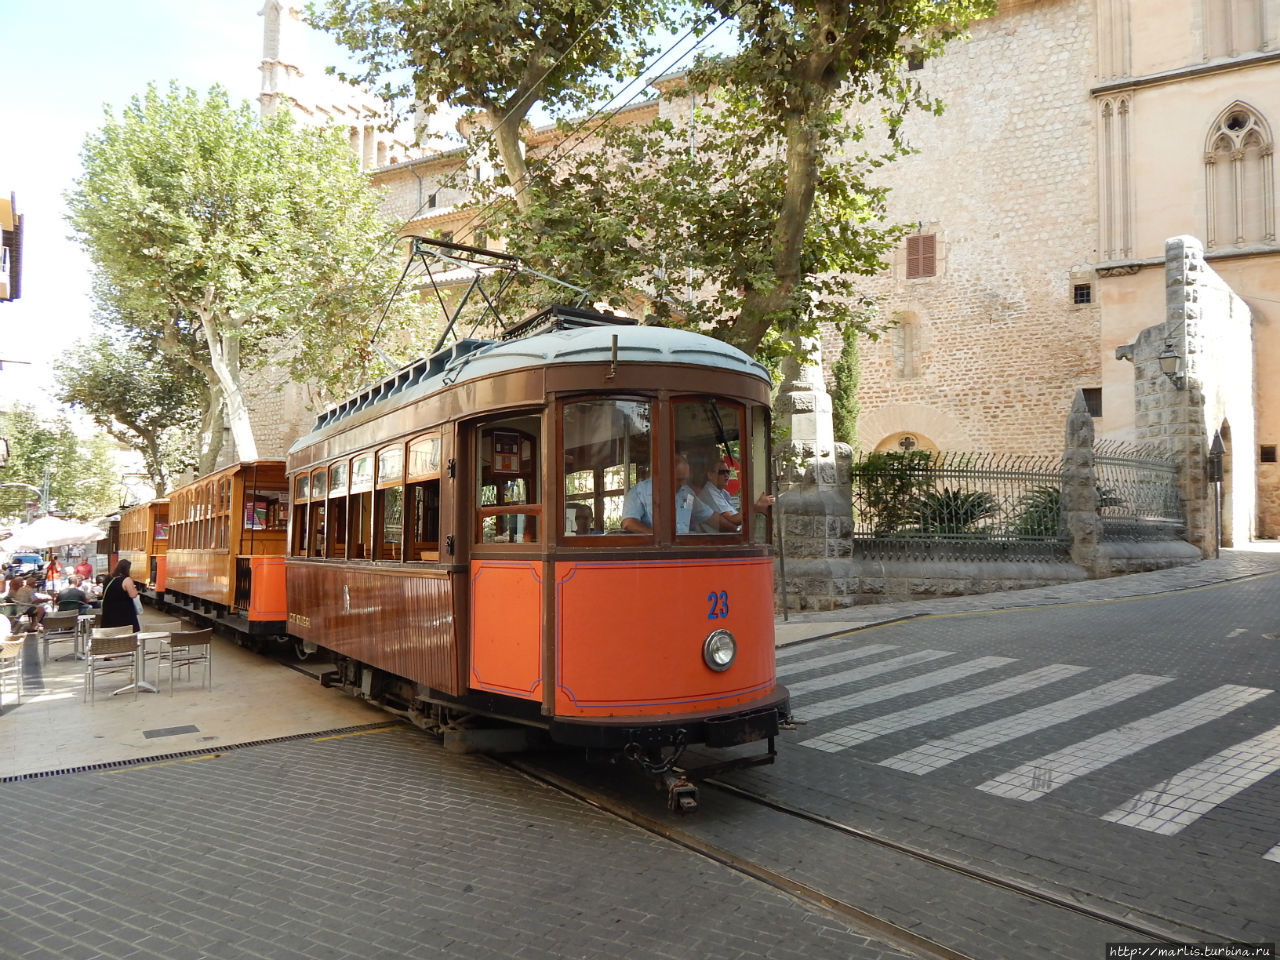 Соер. Cказка о старом трамвае Сольер, остров Майорка, Испания